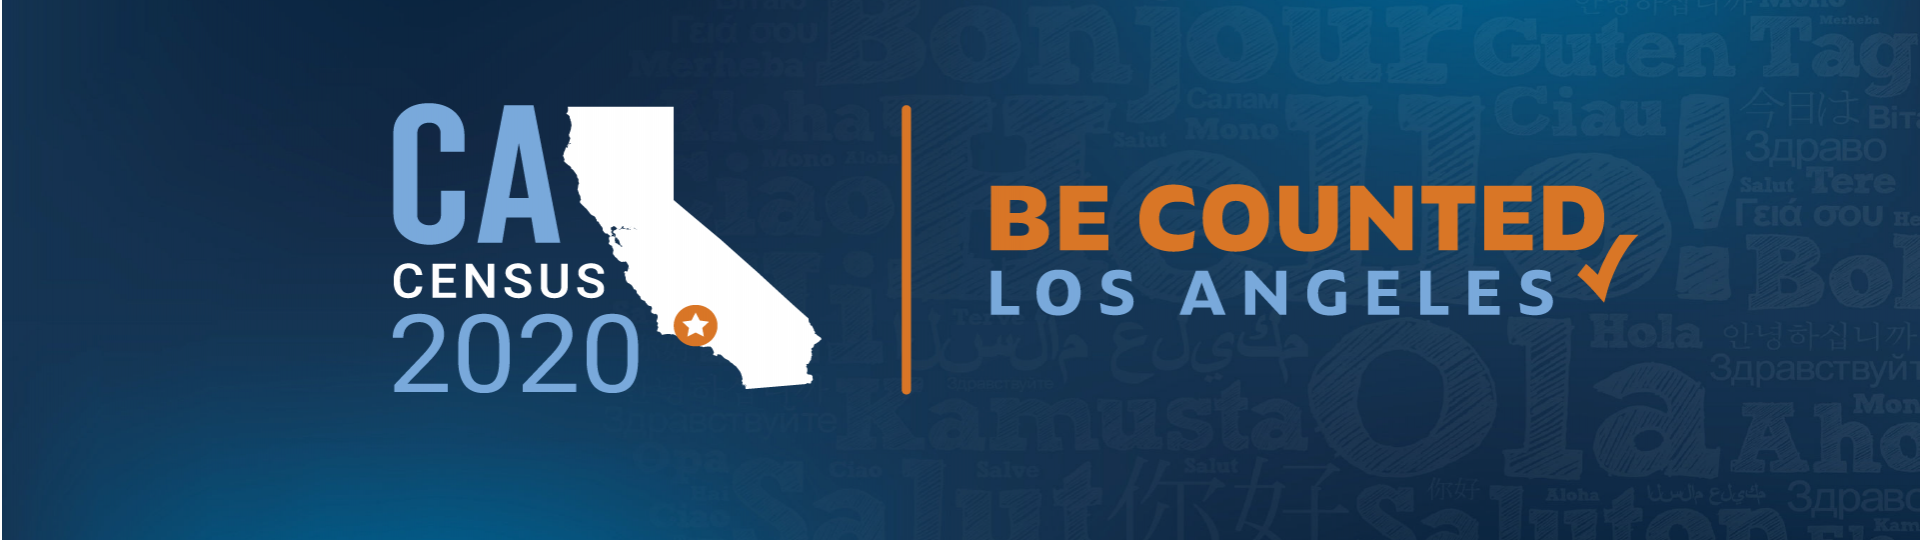 โลโก้การจัดทำสำมะโนประชากรในปี 2020 ของรัฐแคลิฟอร์เนีย พร้อมแผนที่และข้อความ Be Counted Los Angeles